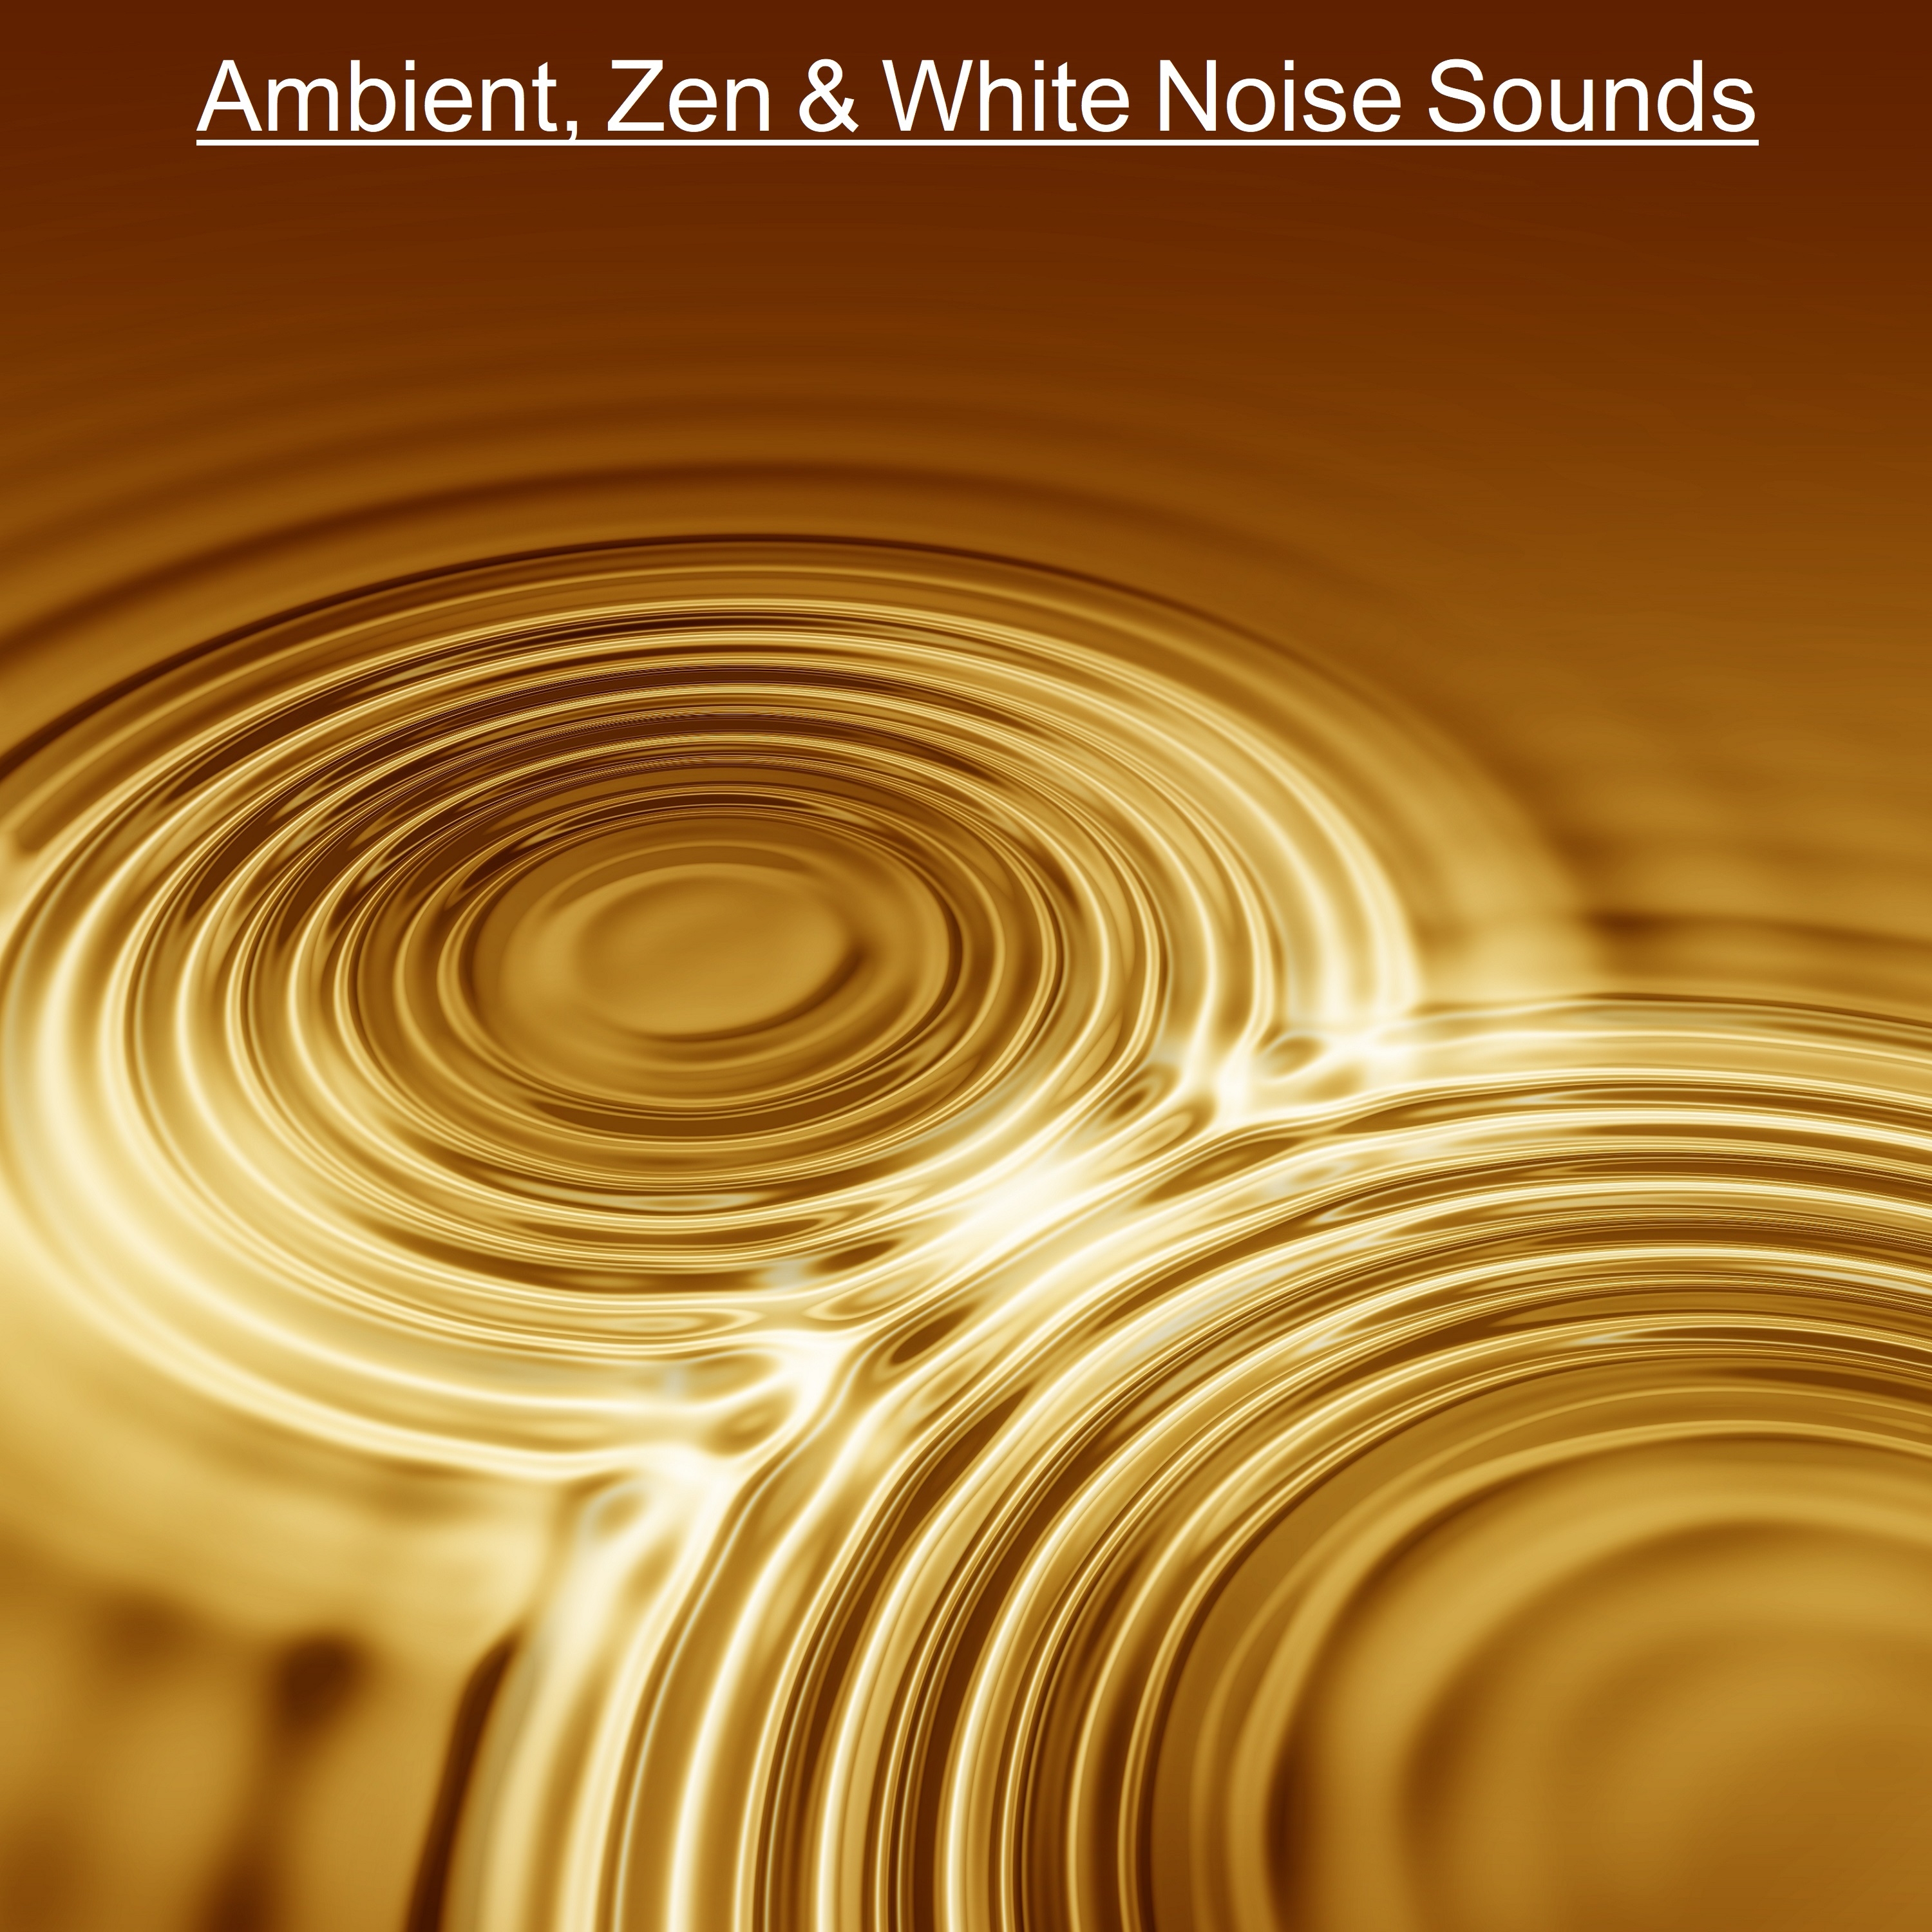 18 Ambient, Zen & White Noise Sounds